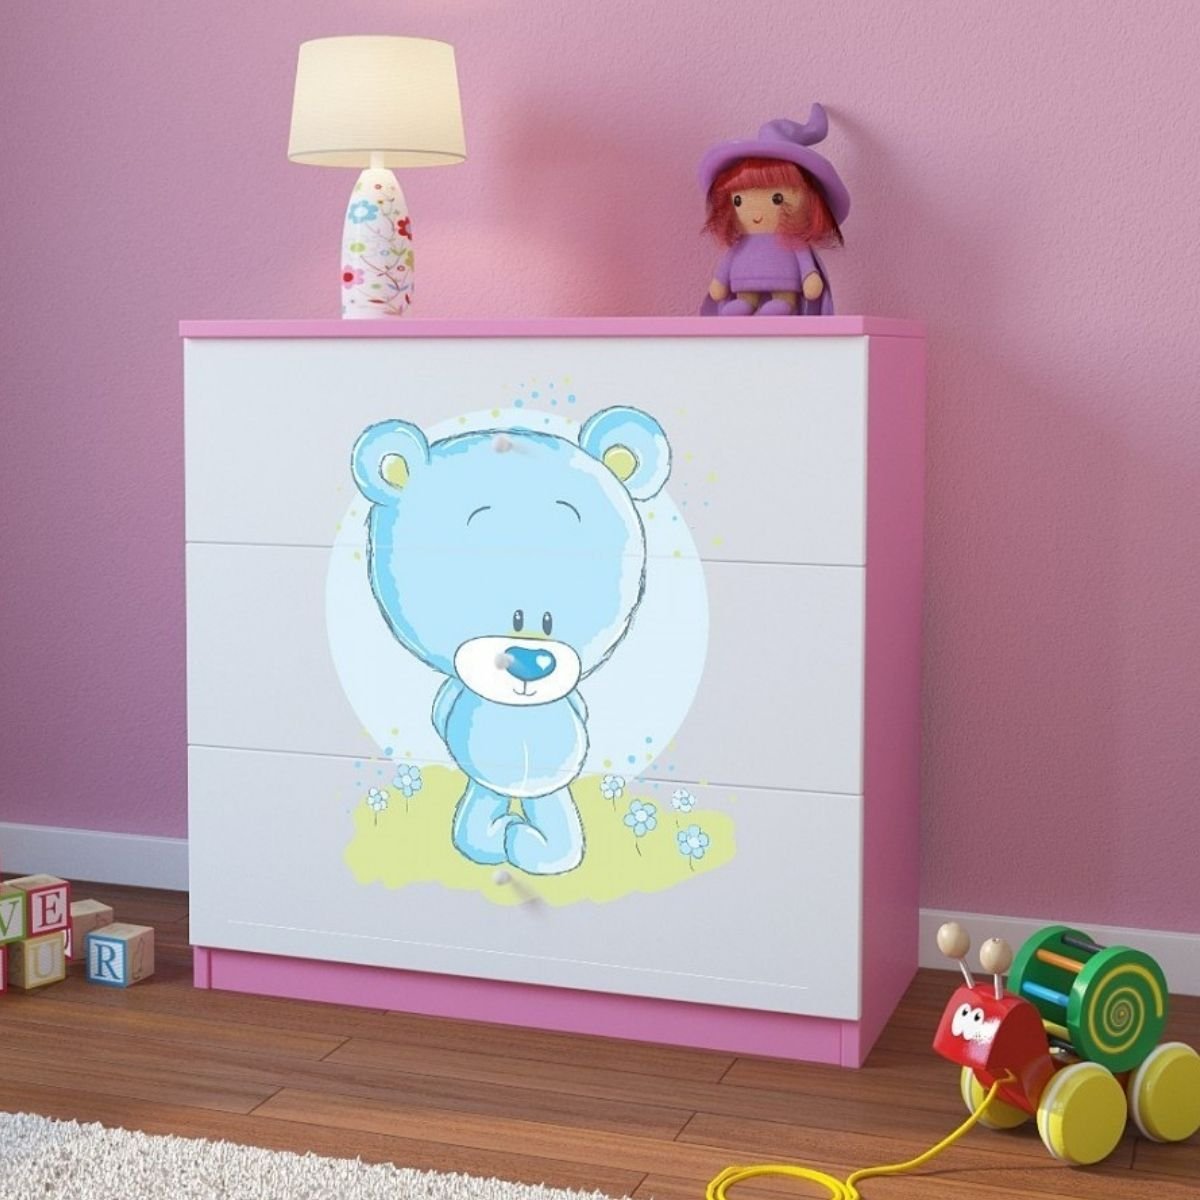 KocotKids Komoda do pokoju dziecięcego, babydreams, niebieski miś, 81 cm, różowa